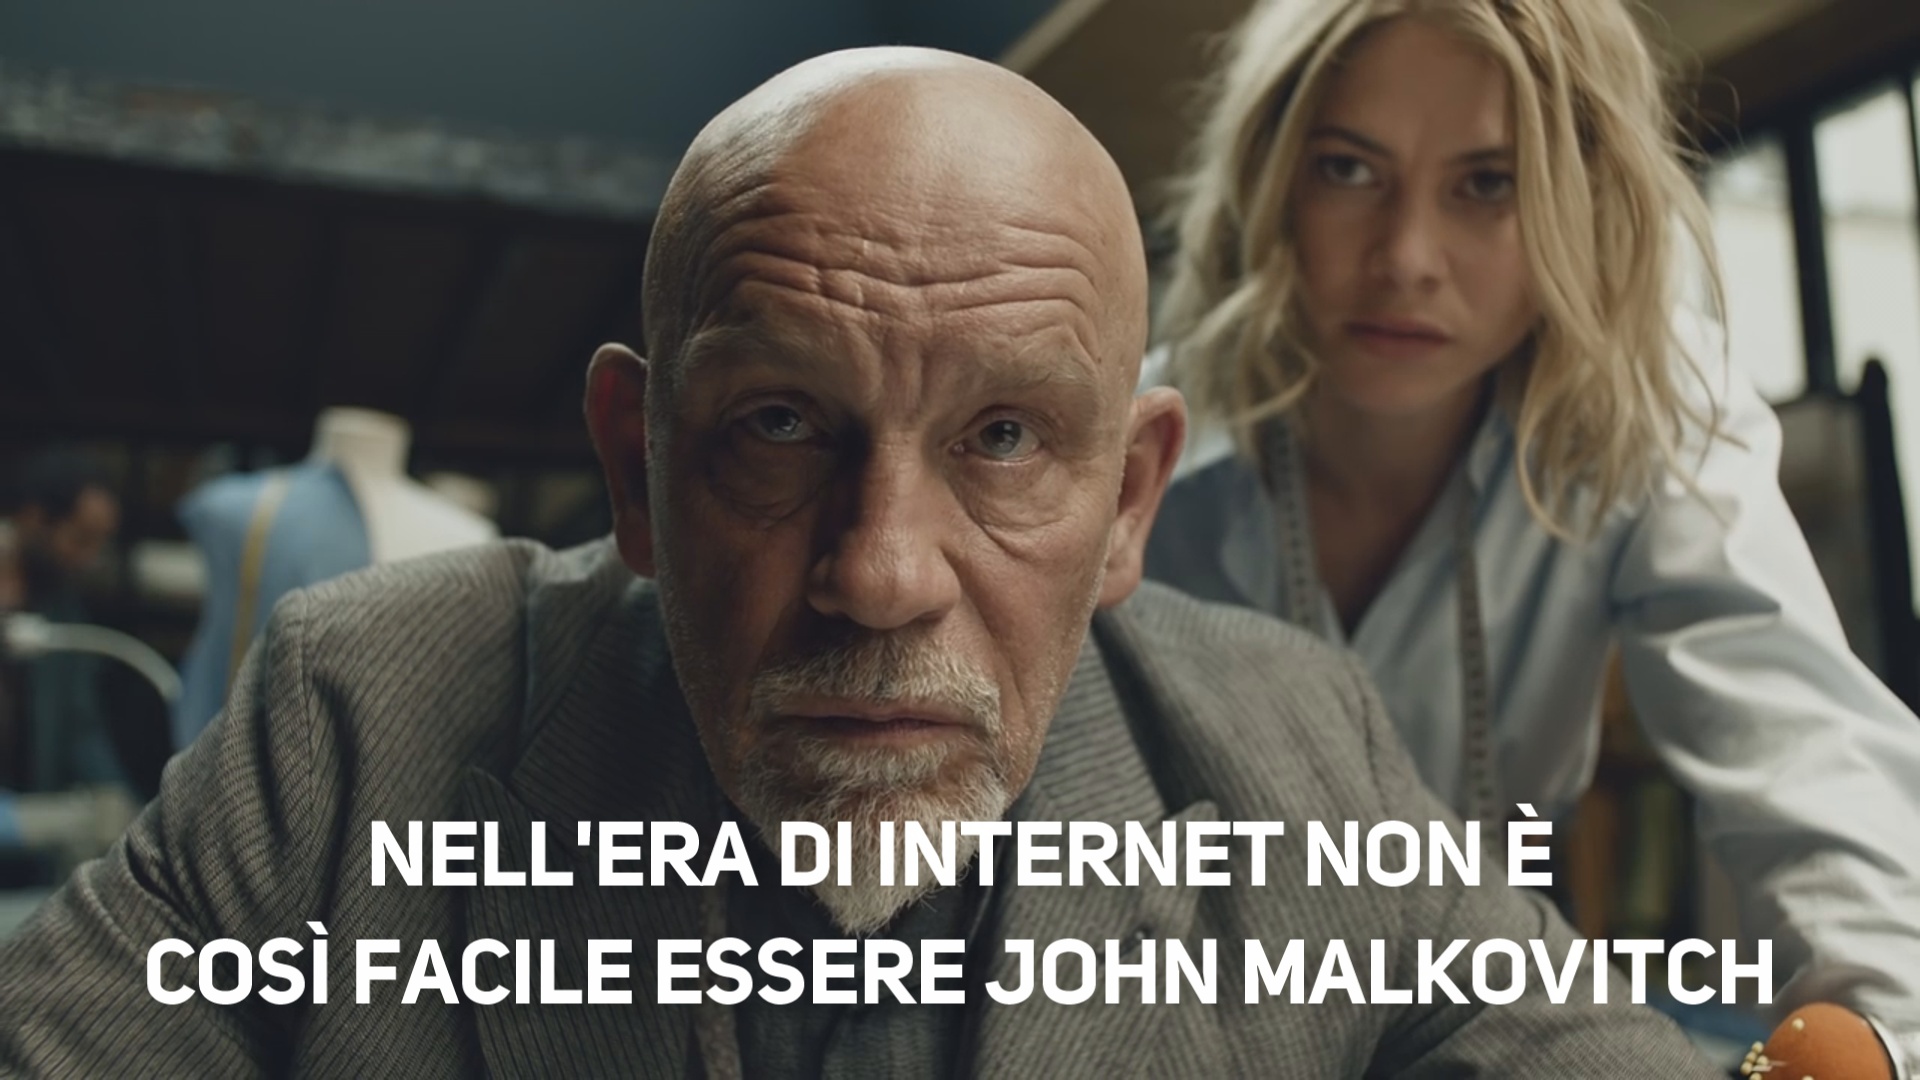 Essere o non essere John Malkovich su internet?